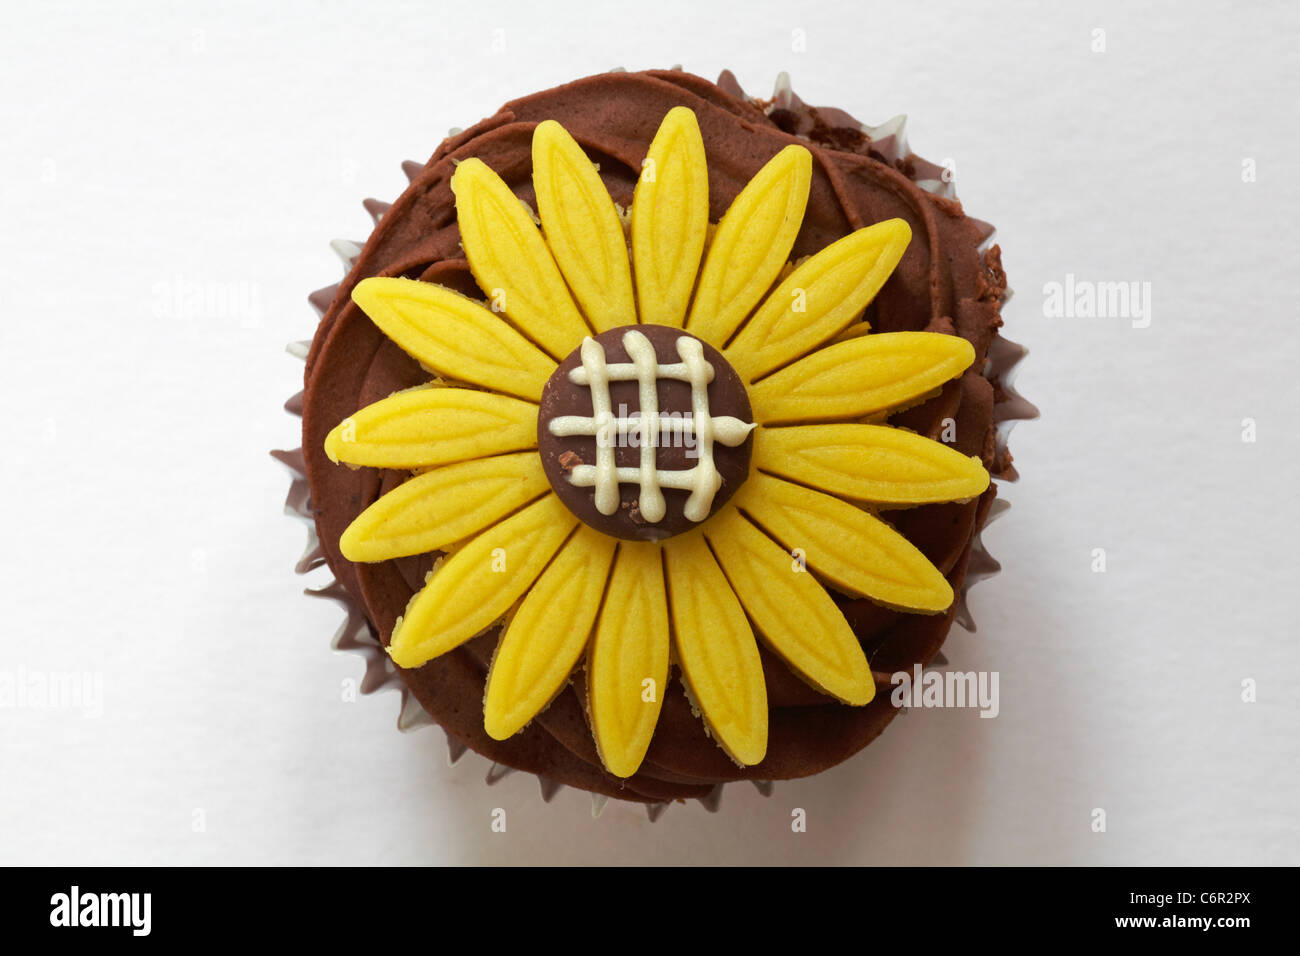 Auf Chocolate Cupcake mit gelben Marzipan daisy flower oben auf weißem Hintergrund - von oben Stockfoto